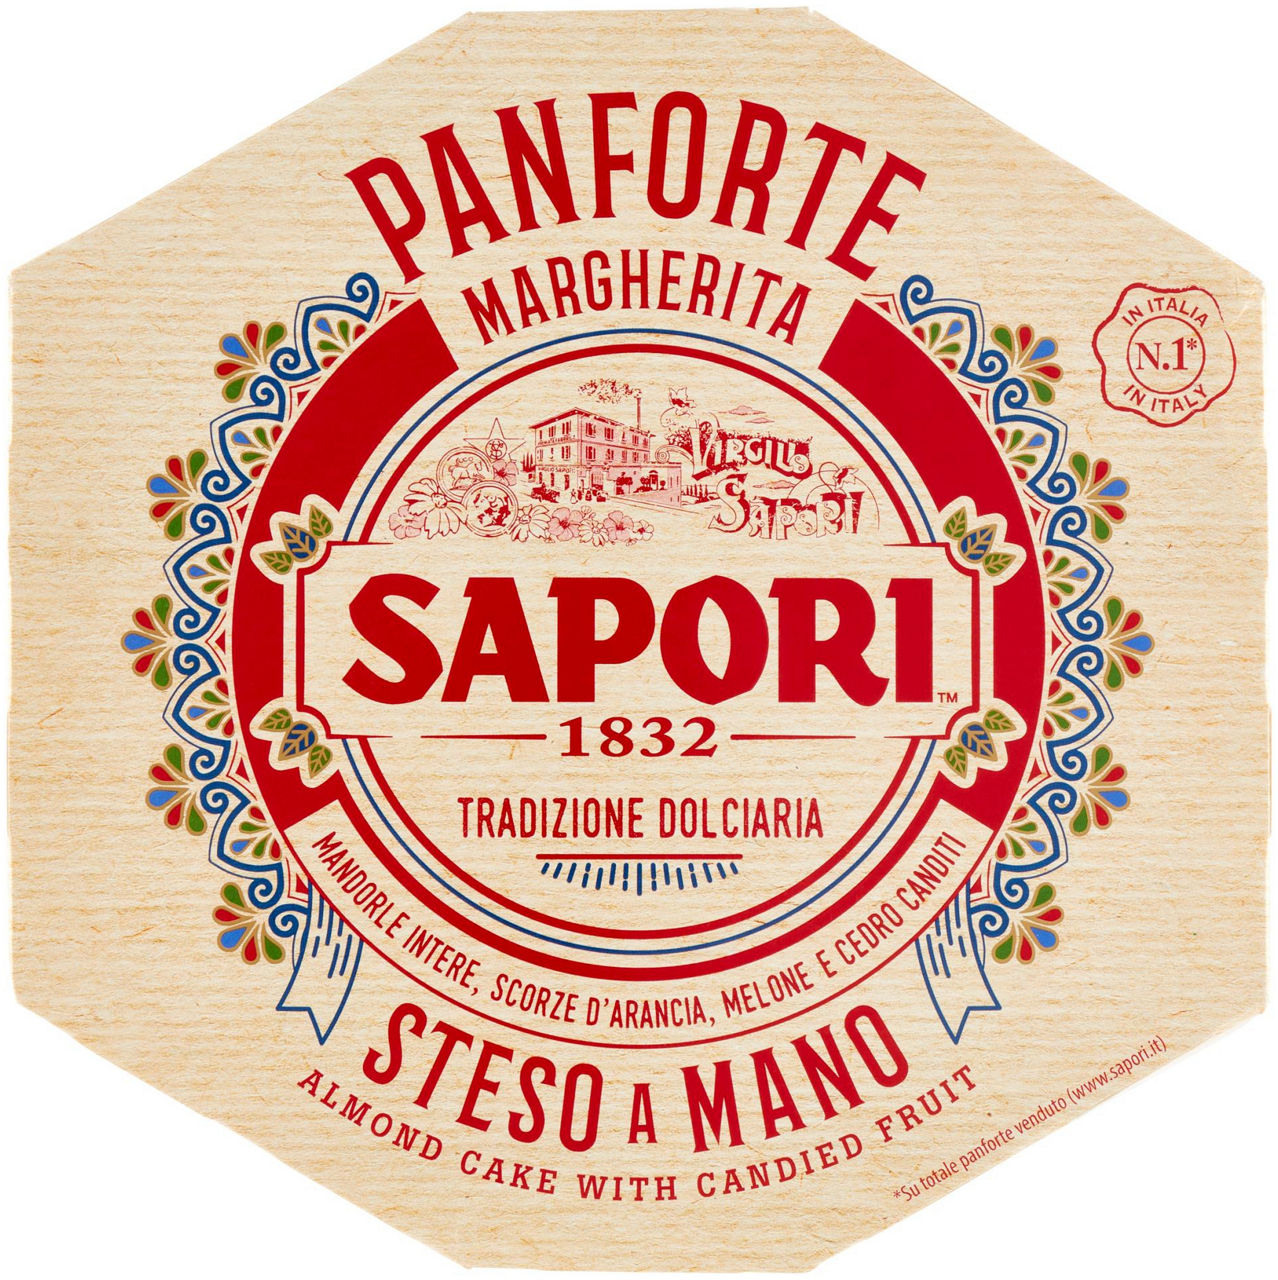 SAPORI PANFORTE MARGHERITA 320 - 0